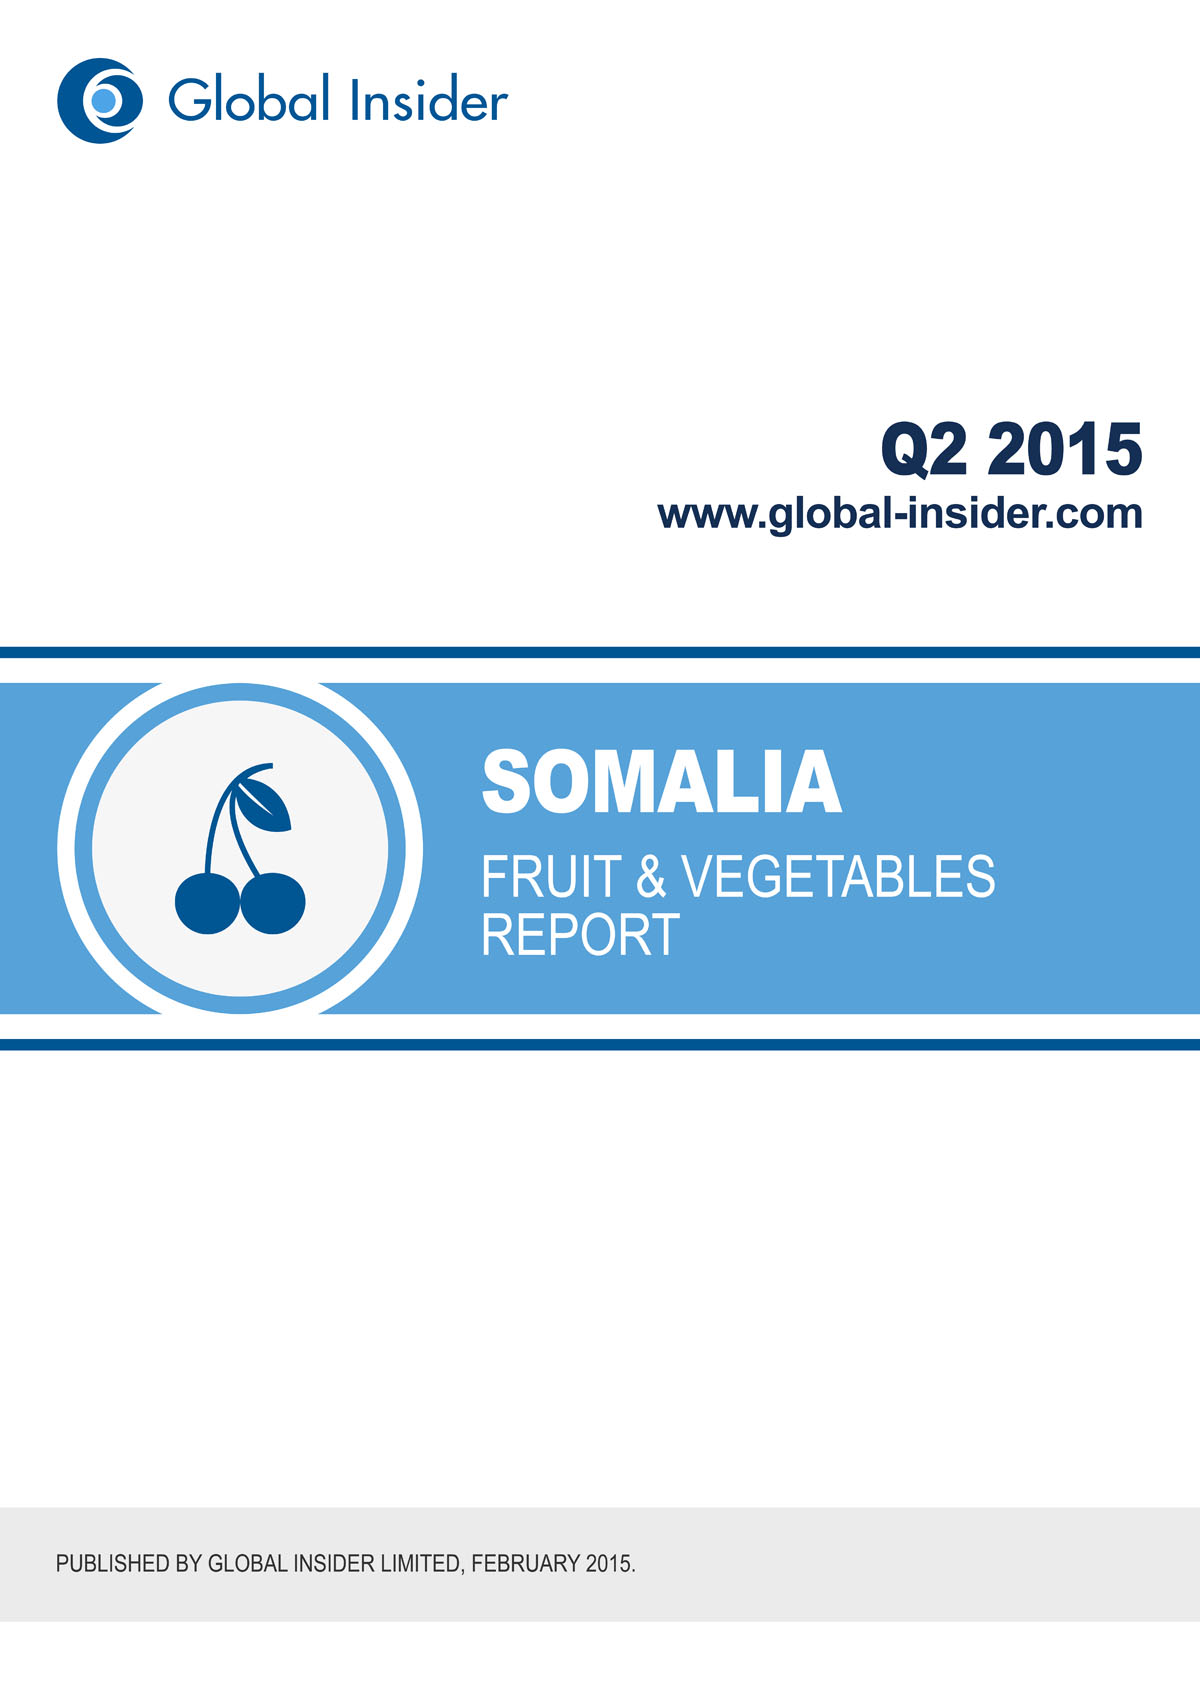 Somalia Fruit & Vegetables Report